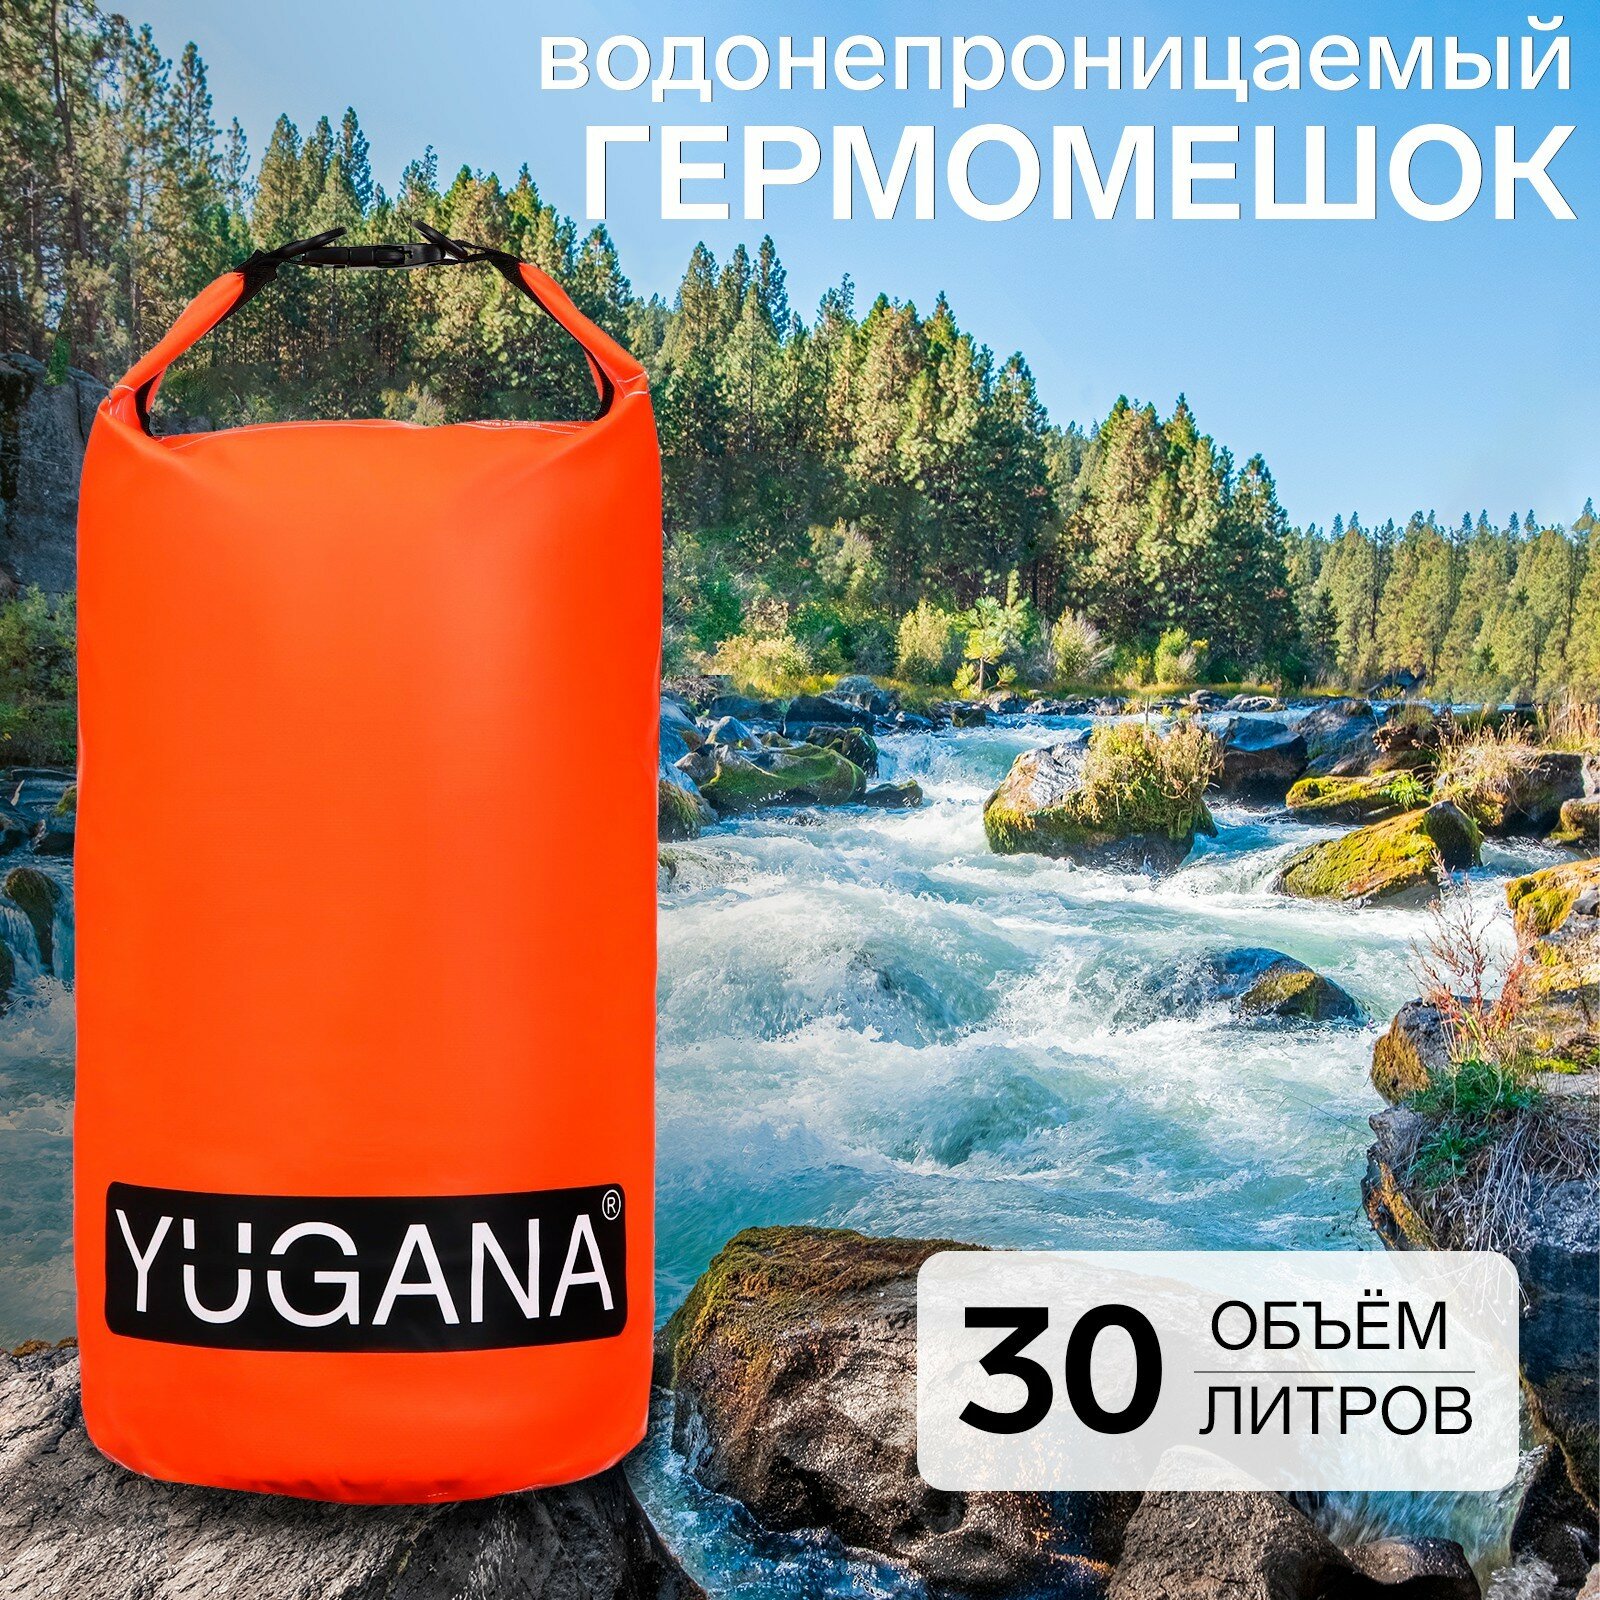 Гермомешок YUGANA, ПВХ, водонепроницаемый 30 литров, два ремня, оранжевый (1шт.)